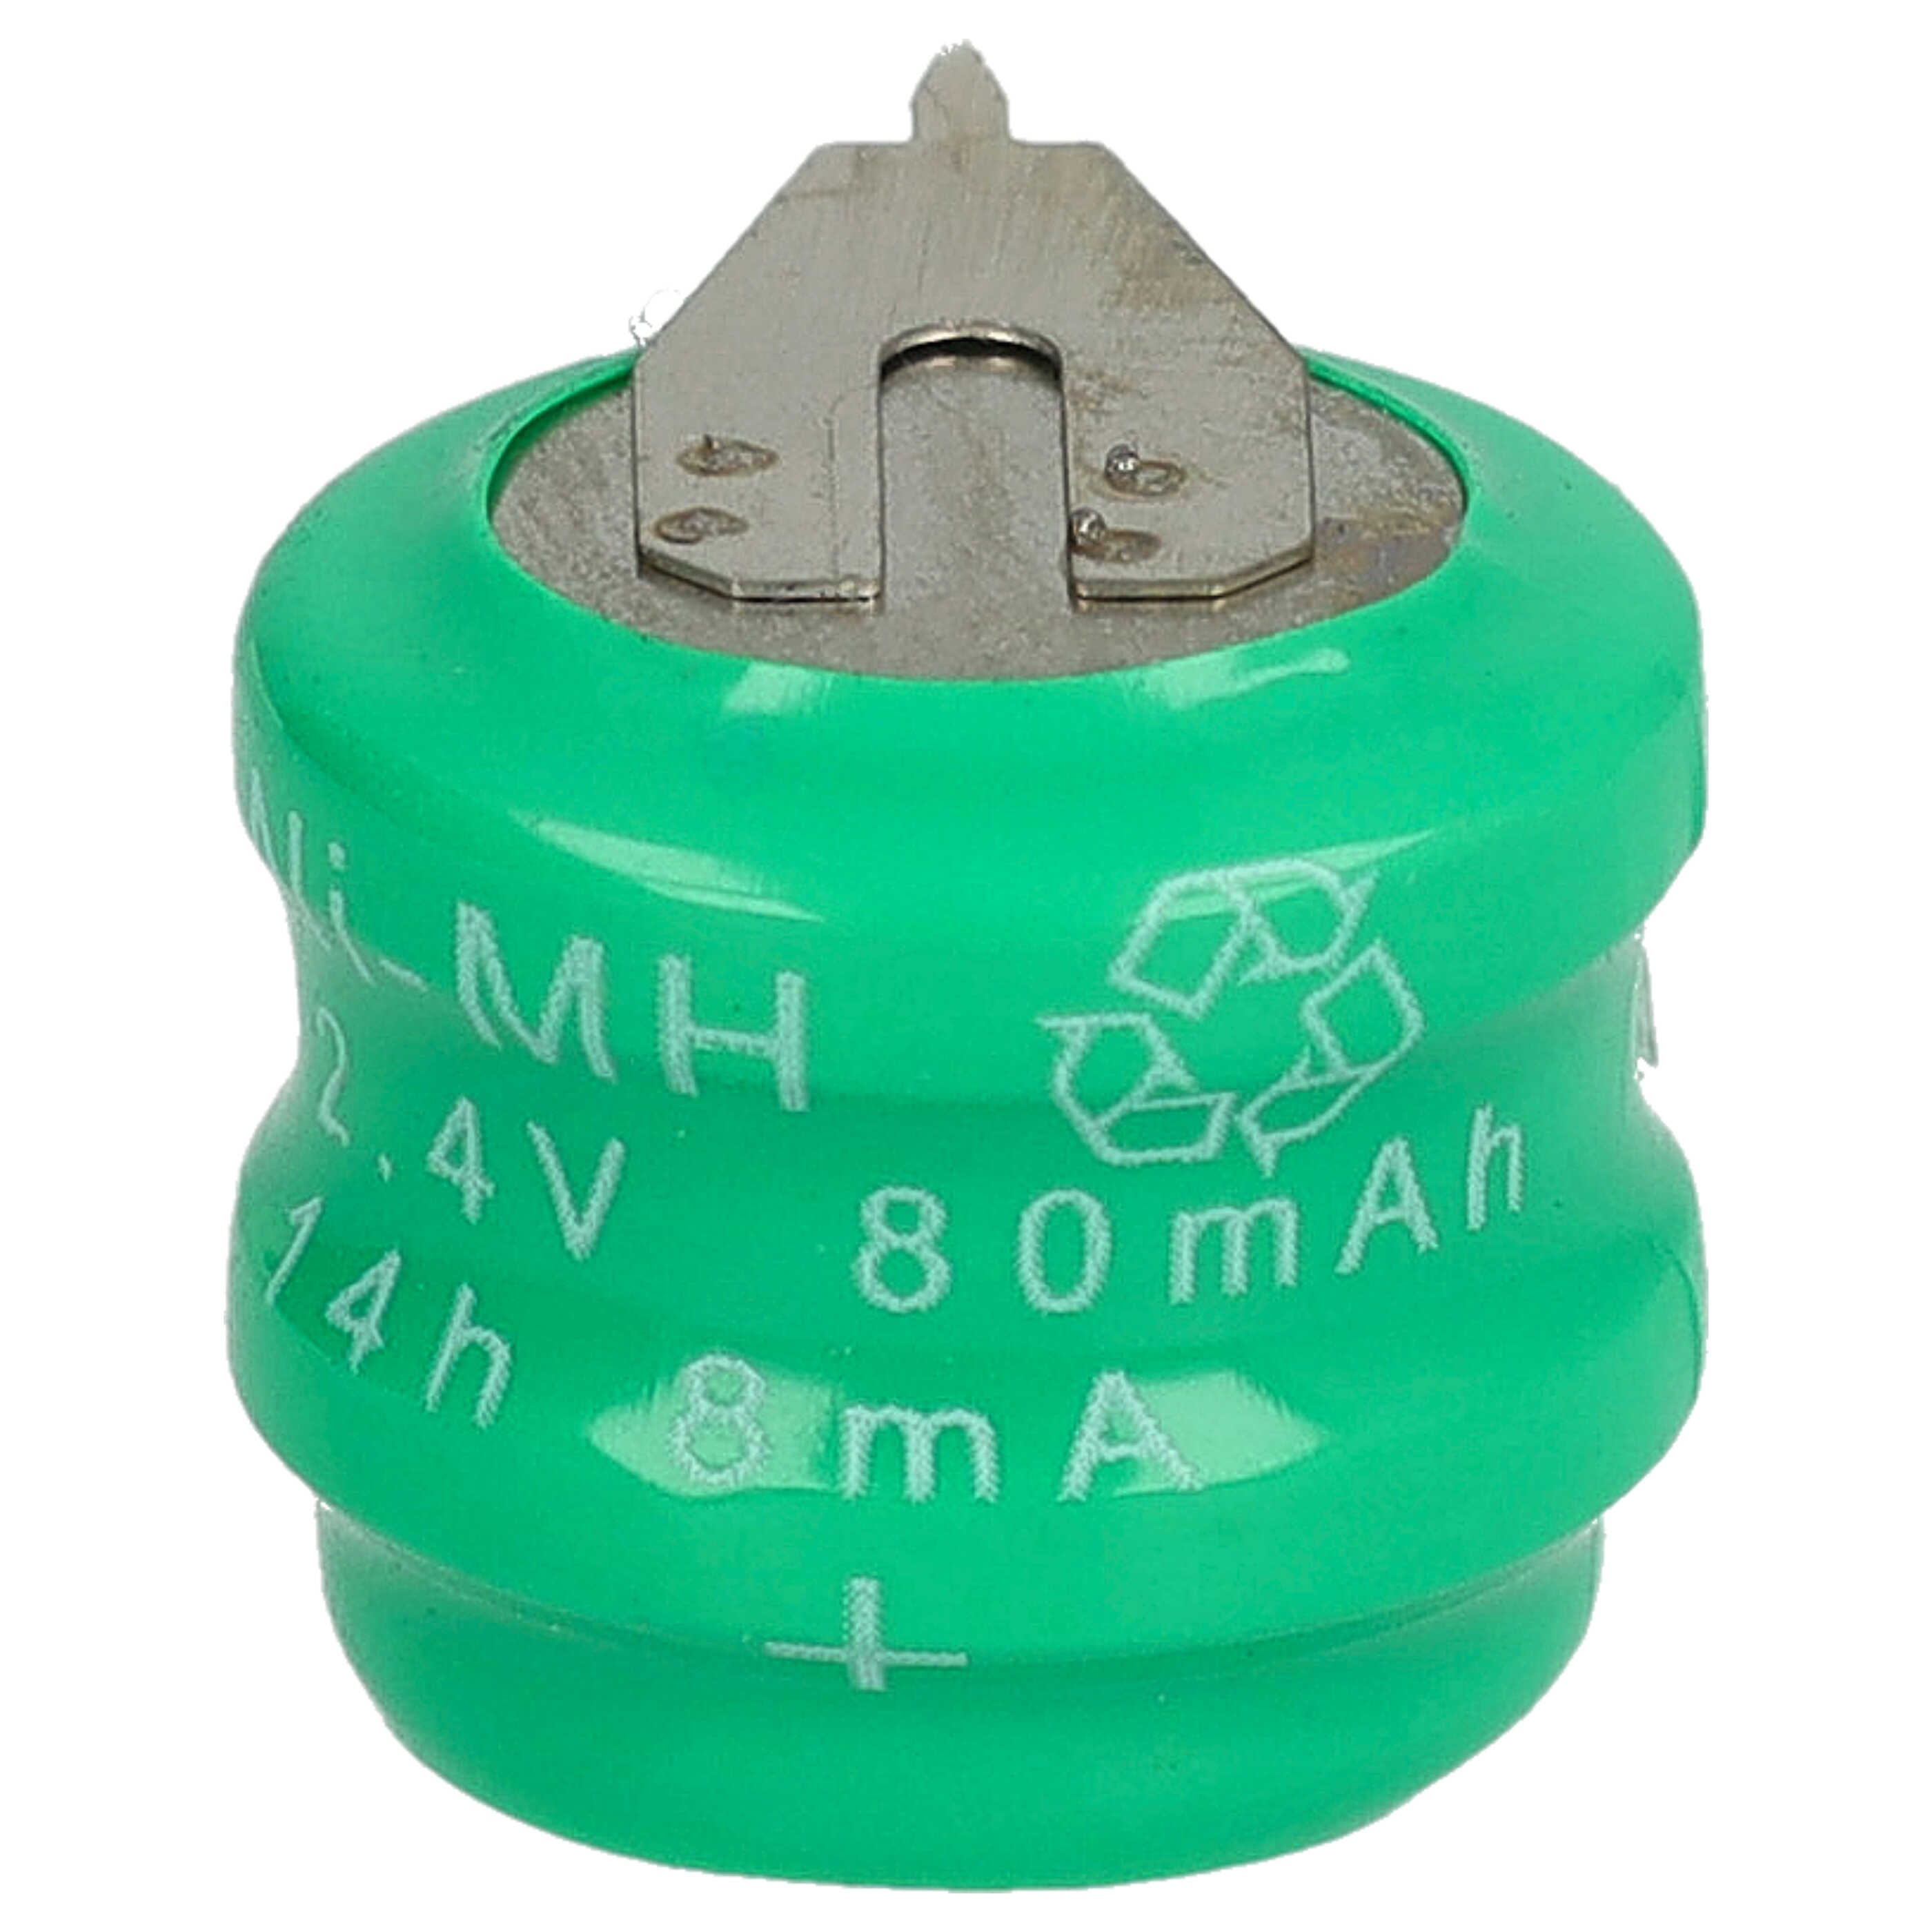 Akumulator guzikowy (2x ogniwo) typ V80H 2 pin do modeli, lamp solarnych itp. zam. V80H - 80 mAh 2,4 V NiMH